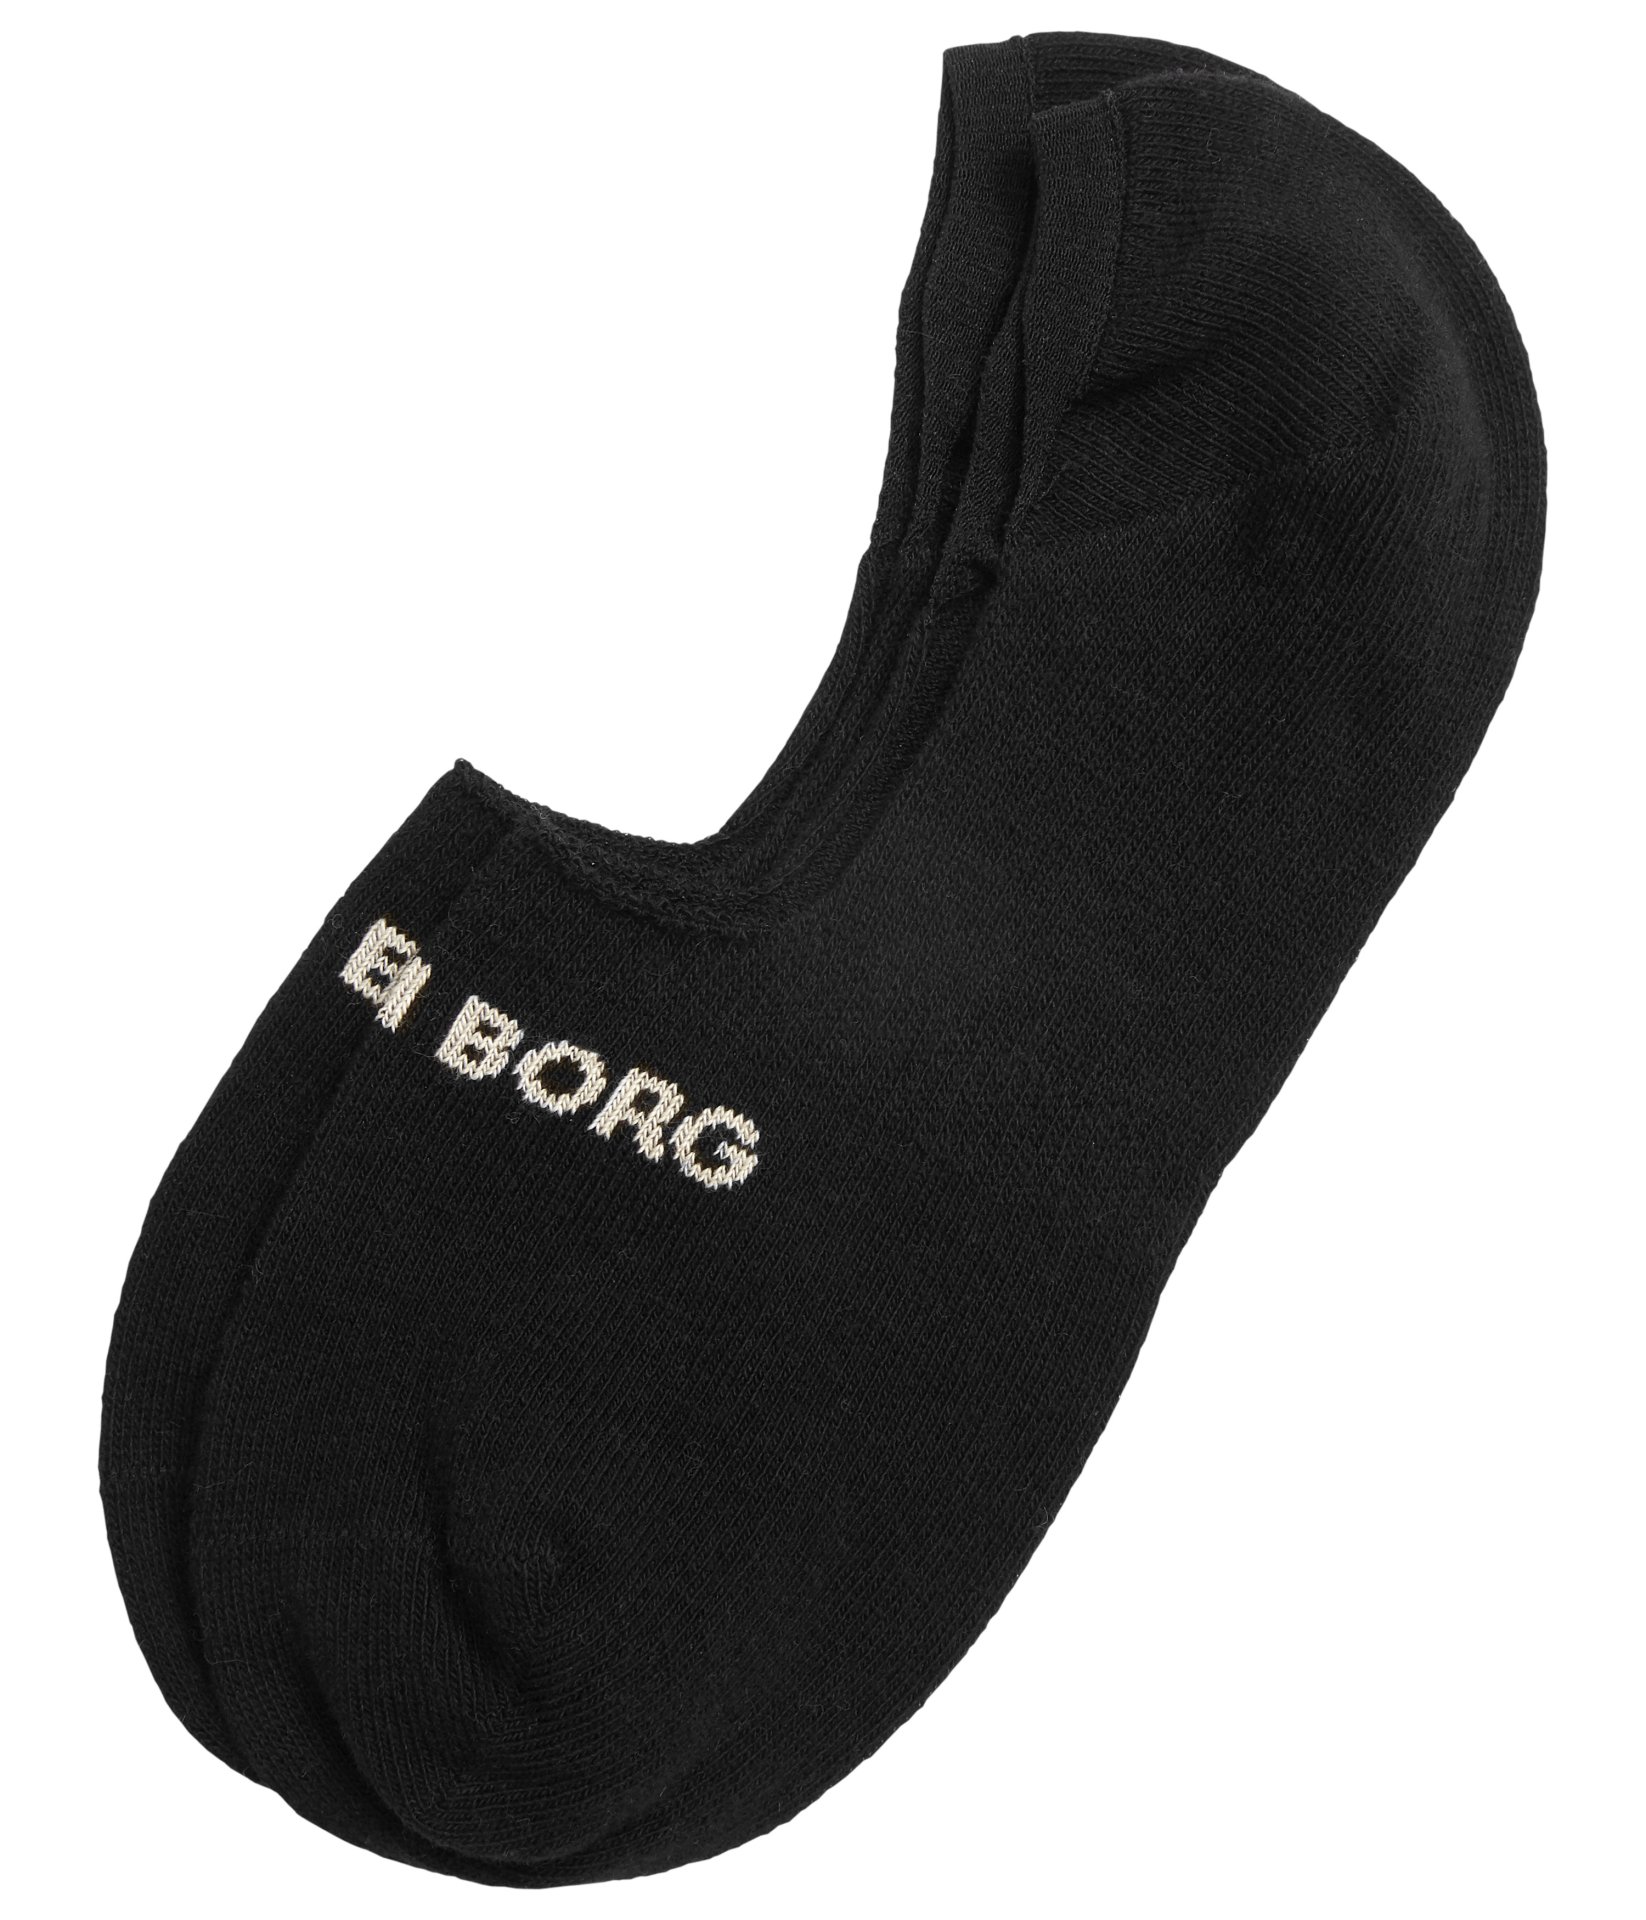 Ανδρικά/Αξεσουάρ/Κάλτσες BJORN BORG - Ανδρικές κάλτσες σετ των 2 BJORN BORG μαύρες